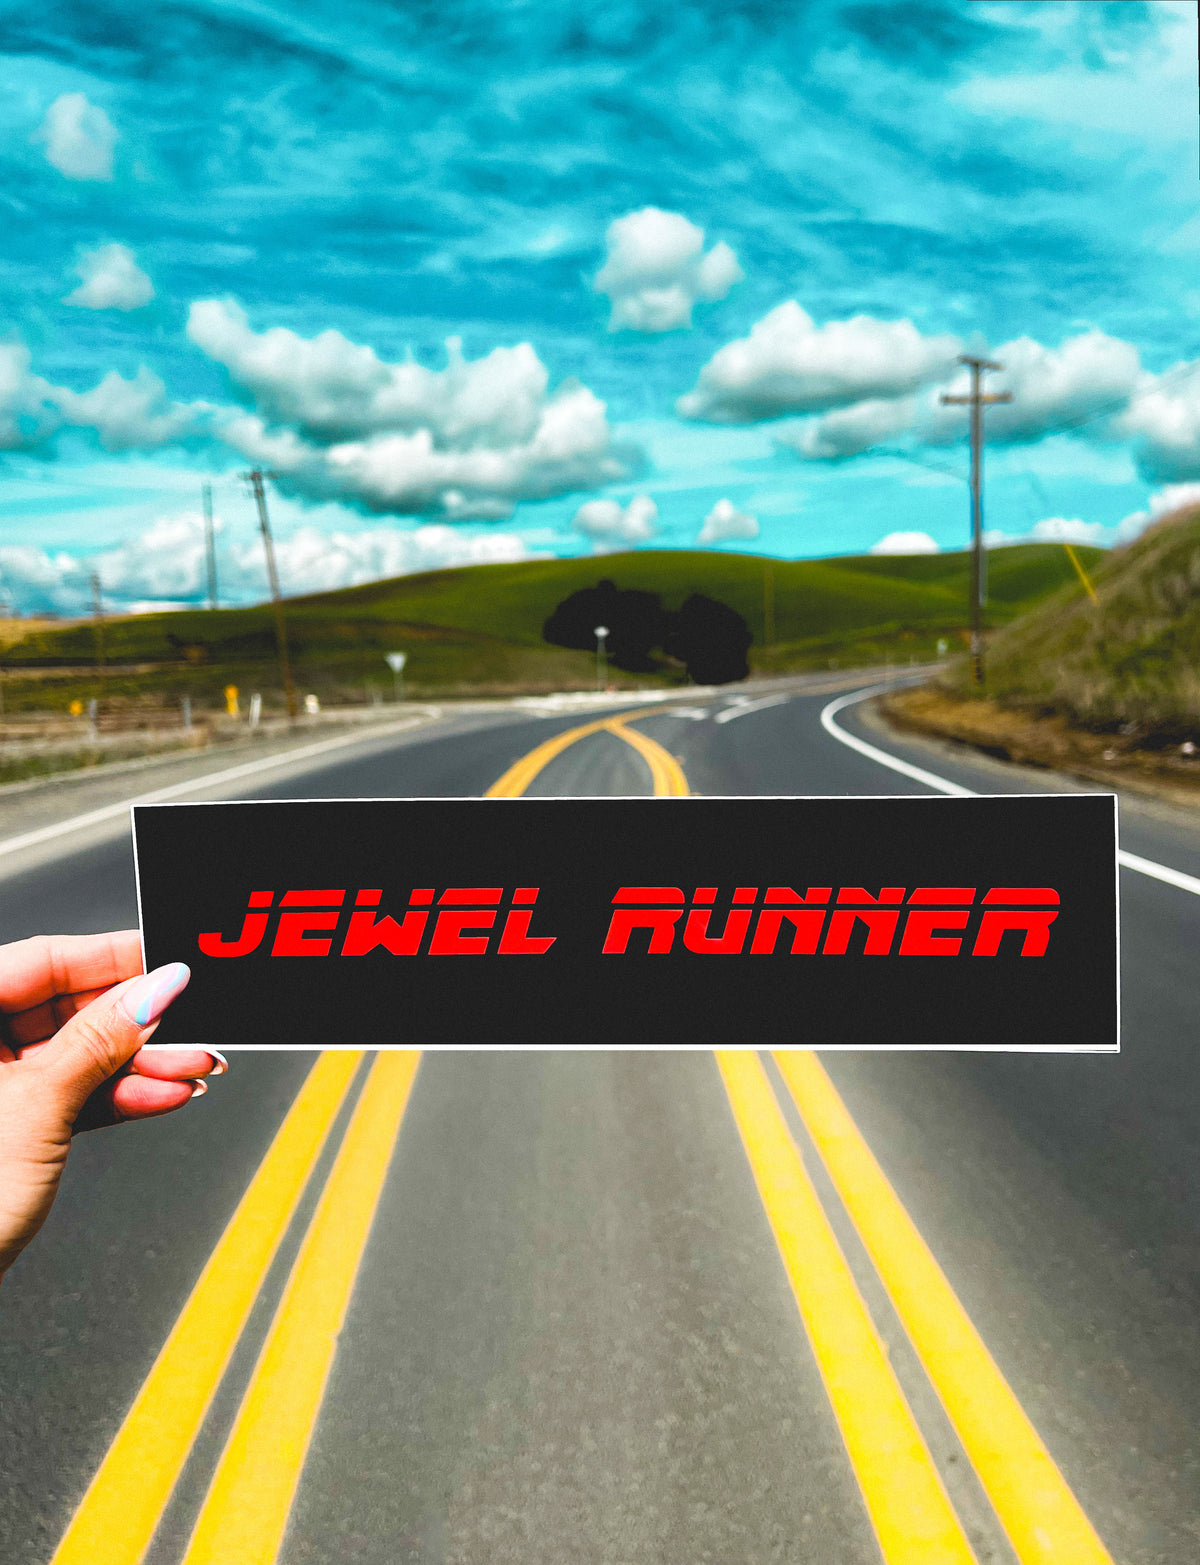 JEWEL RUNNER BUMPER STICKER